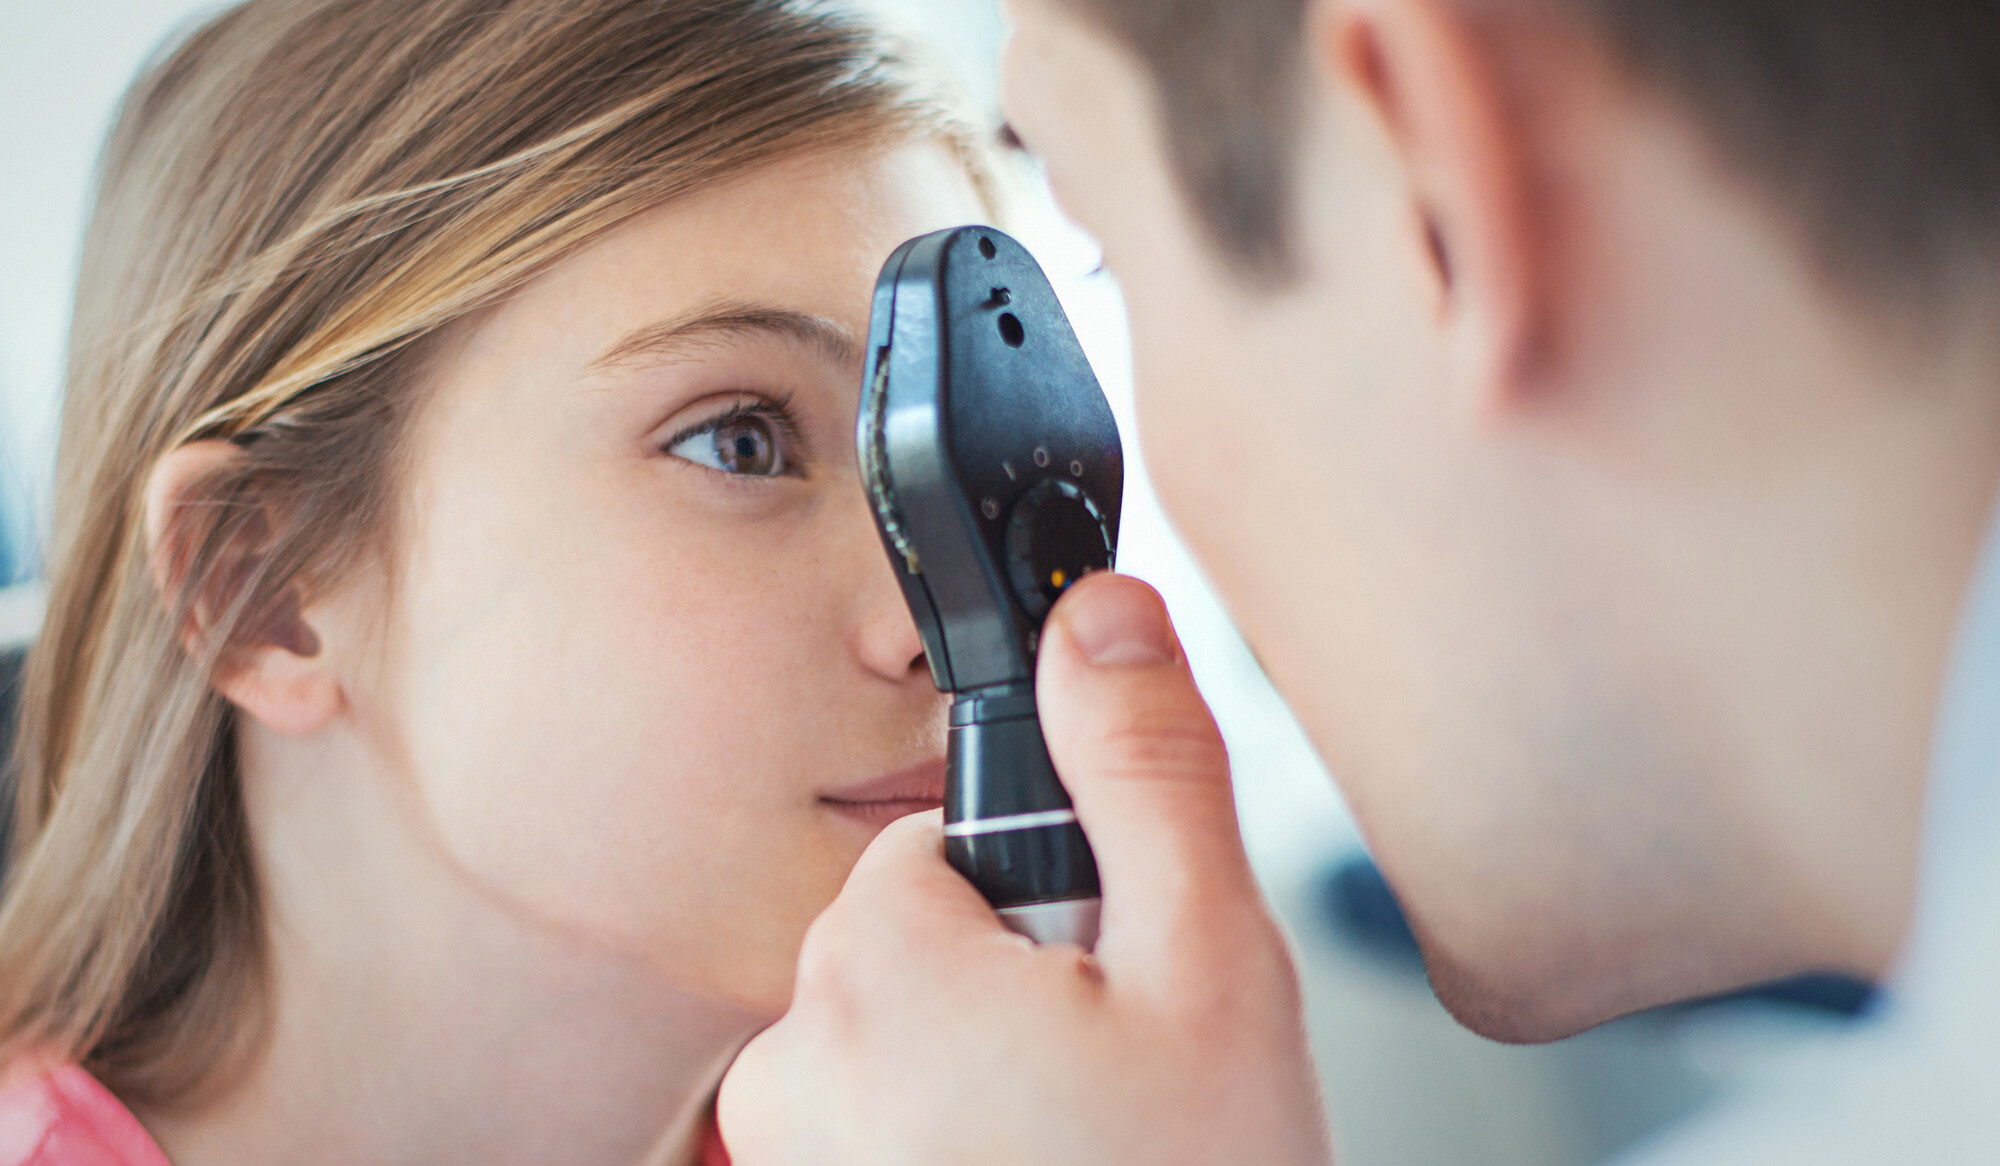 Viele Kinder mit juveniler idiopathischer Arthritis (JIA) leiden an Folgeschäden an den Augen. Denn das Zeitfenster, um früh und effektiv gegenzusteuern, ist klein: Nur maximal sechs Wochen sollten zwischen JIA-Diagnose und einer Vorstellung beim Augenarzt liegen.